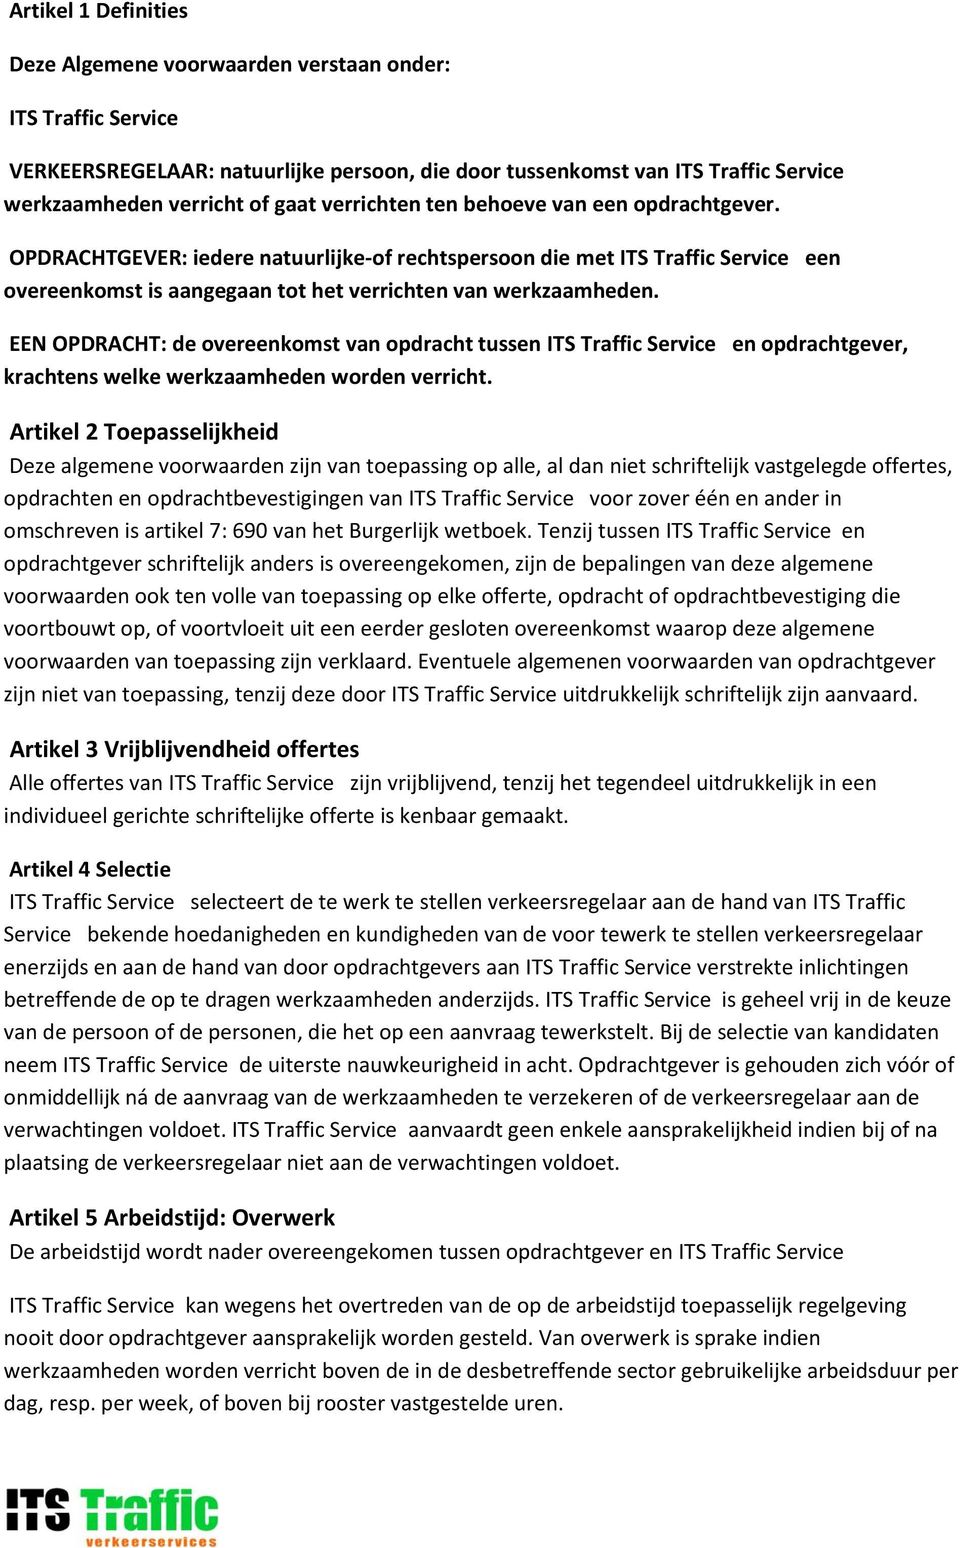 EEN OPDRACHT: de overeenkomst van opdracht tussen ITS Traffic Service en opdrachtgever, krachtens welke werkzaamheden worden verricht.